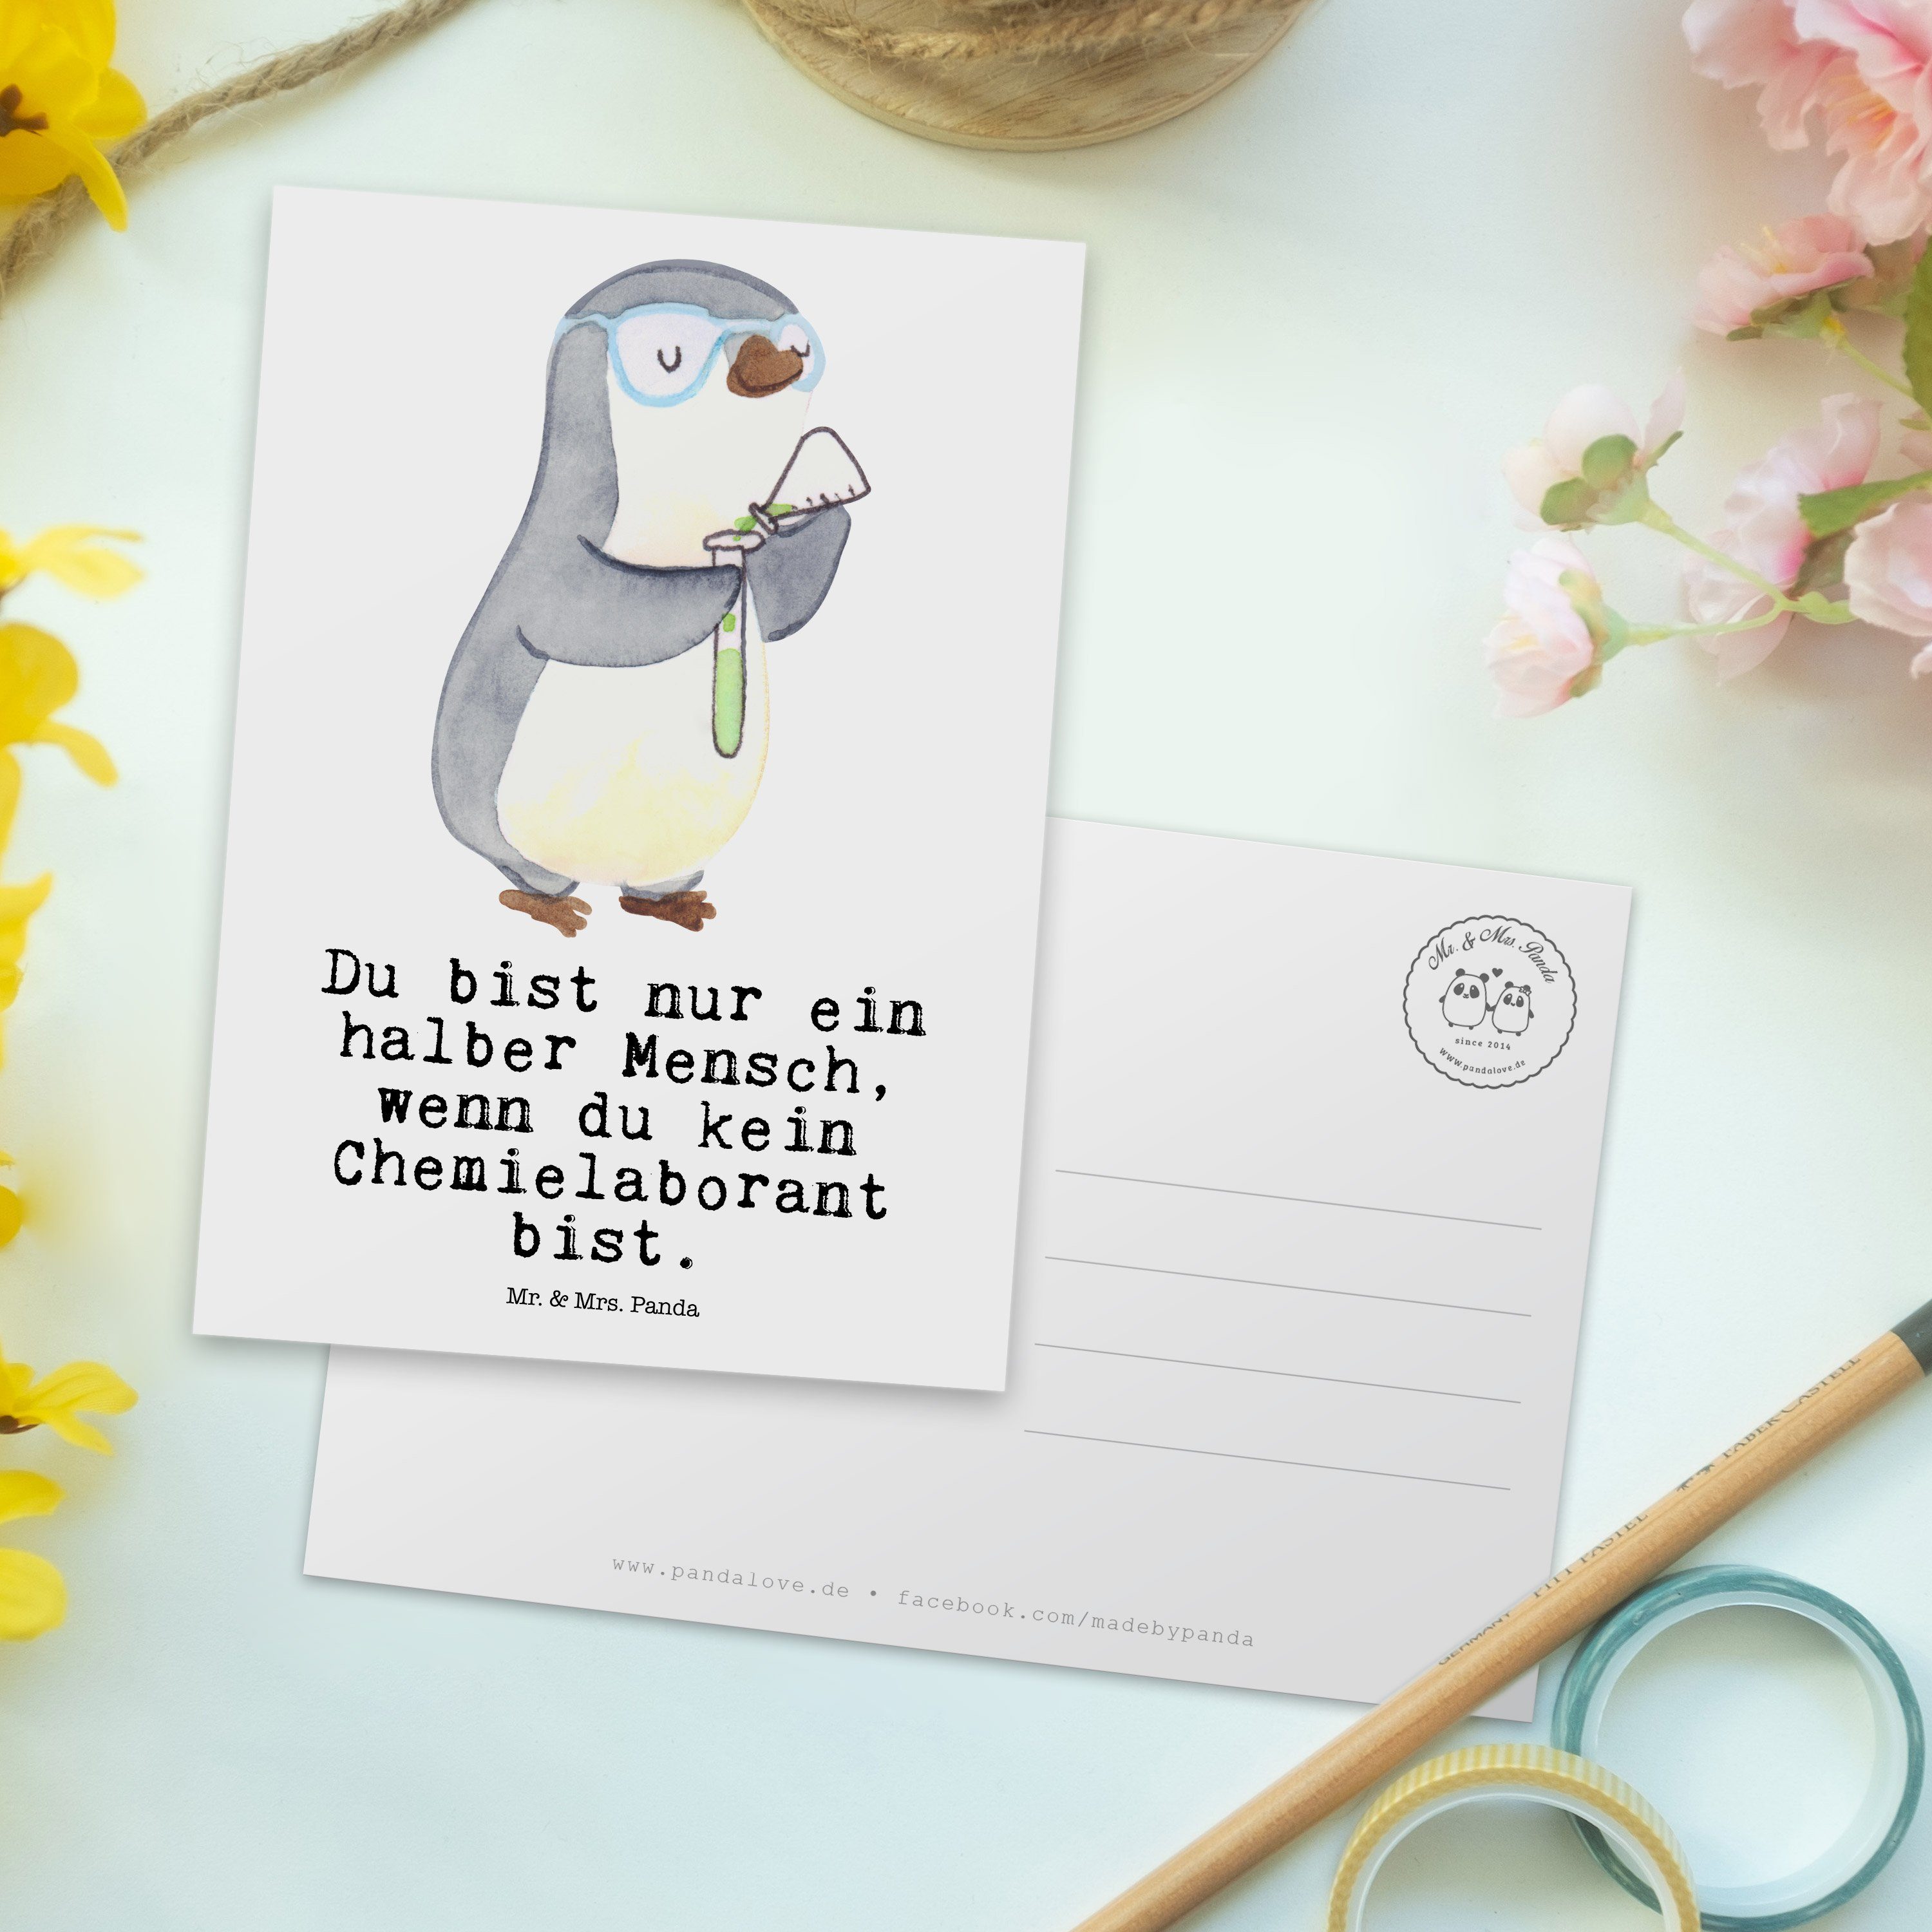 & Chemielaborant Mrs. - Mr. - Panda mit Geschenk, Chemiker, Herz Geschenkkarte, Weiß E Postkarte